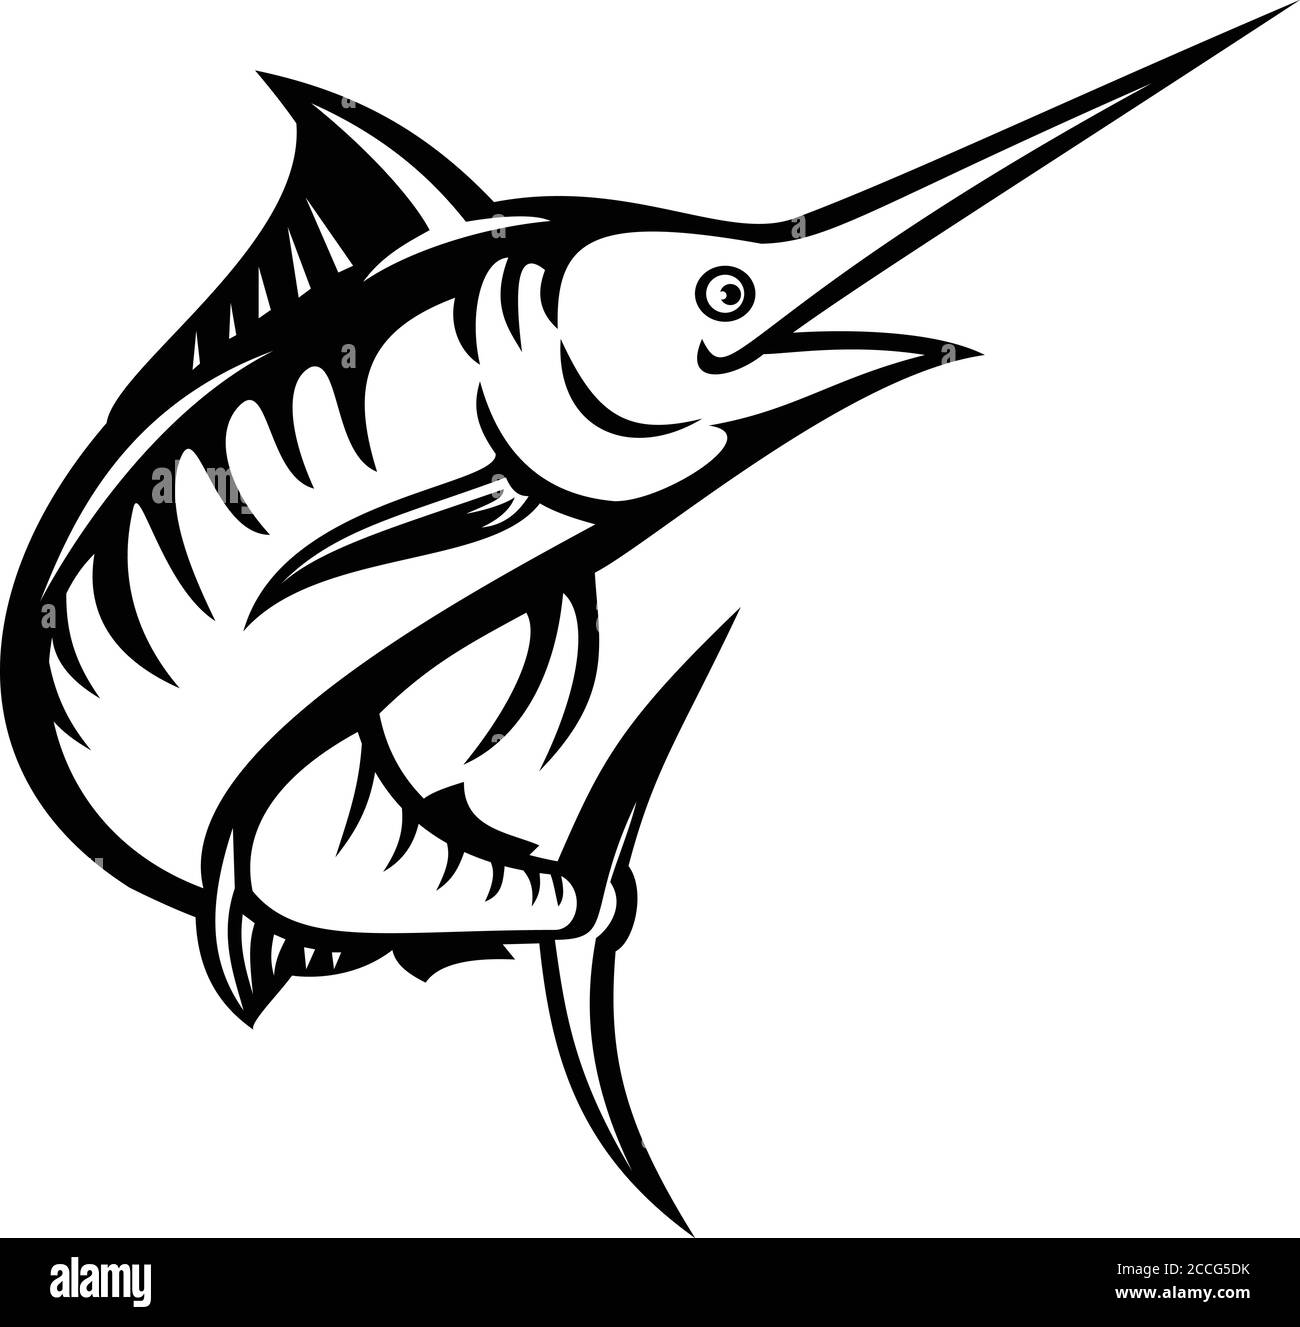 Ilustración de estilo retro de una aguja azul del Indo-Pacífico, una especie de aguja o pez espada nadando y saltando en blanco y negro sobre aislado b Ilustración del Vector